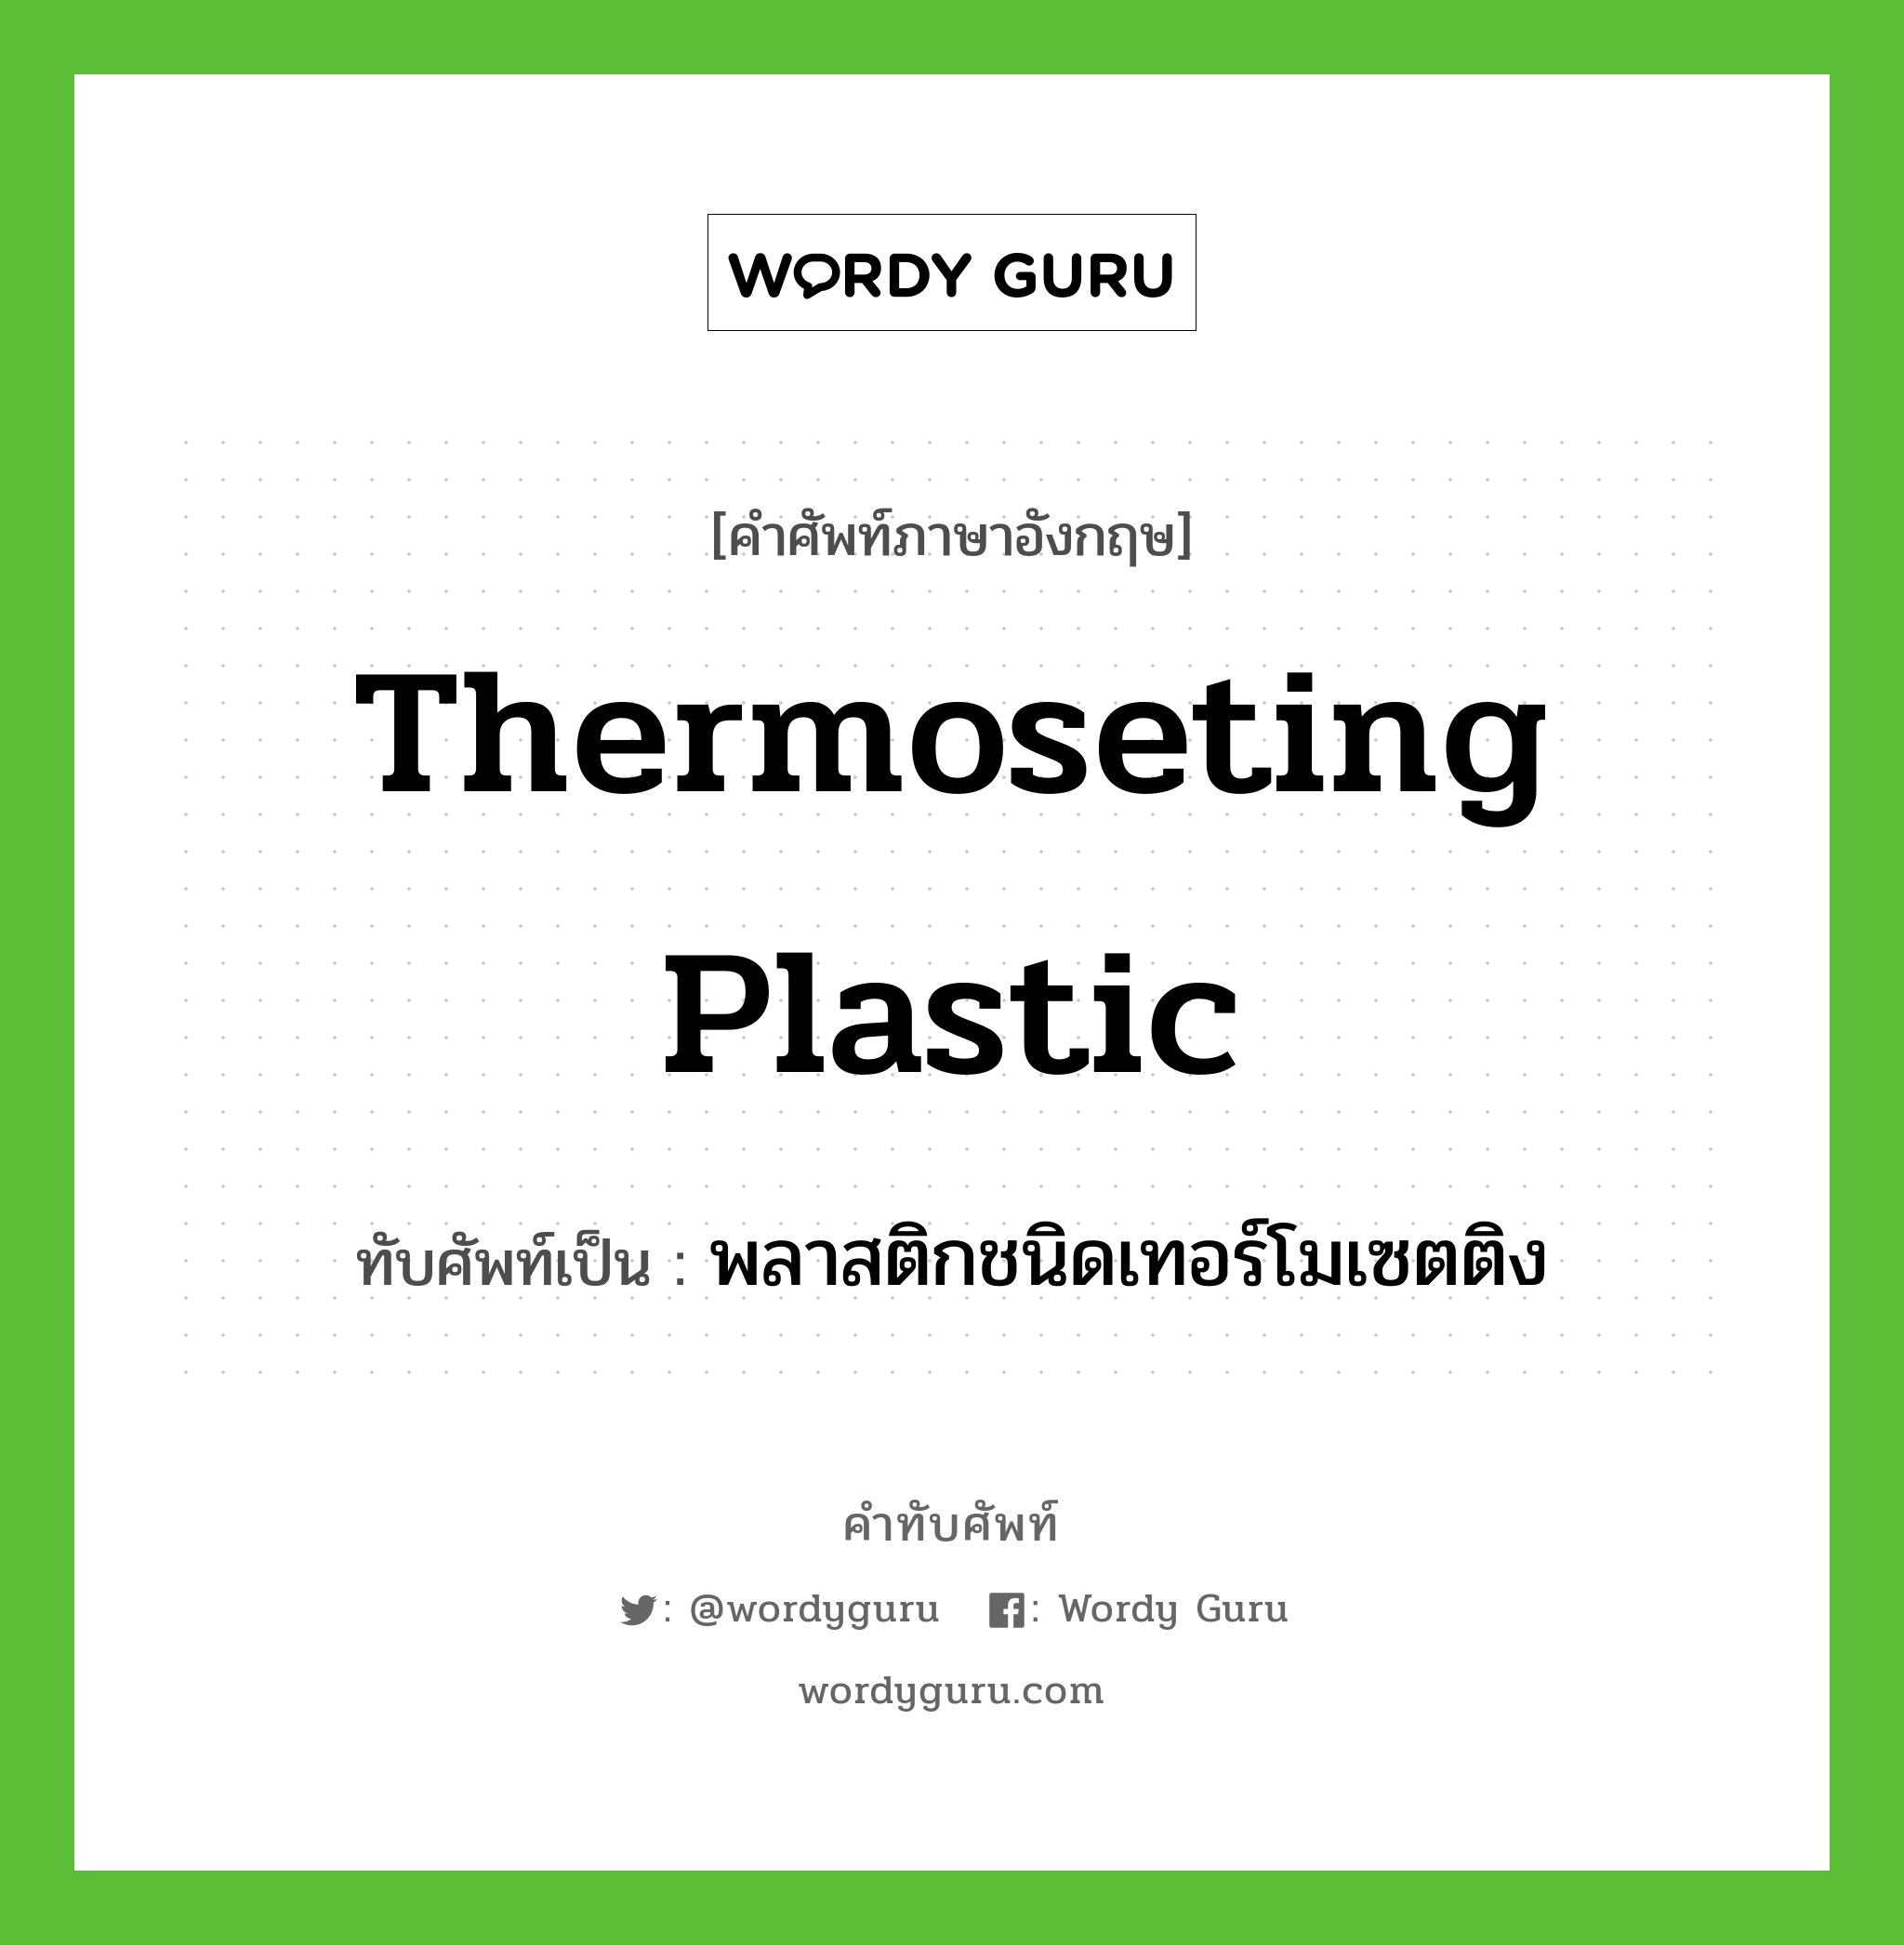 พลาสติกชนิดเทอร์โมเซตติง เขียนอย่างไร?, คำศัพท์ภาษาอังกฤษ พลาสติกชนิดเทอร์โมเซตติง ทับศัพท์เป็น thermoseting plastic